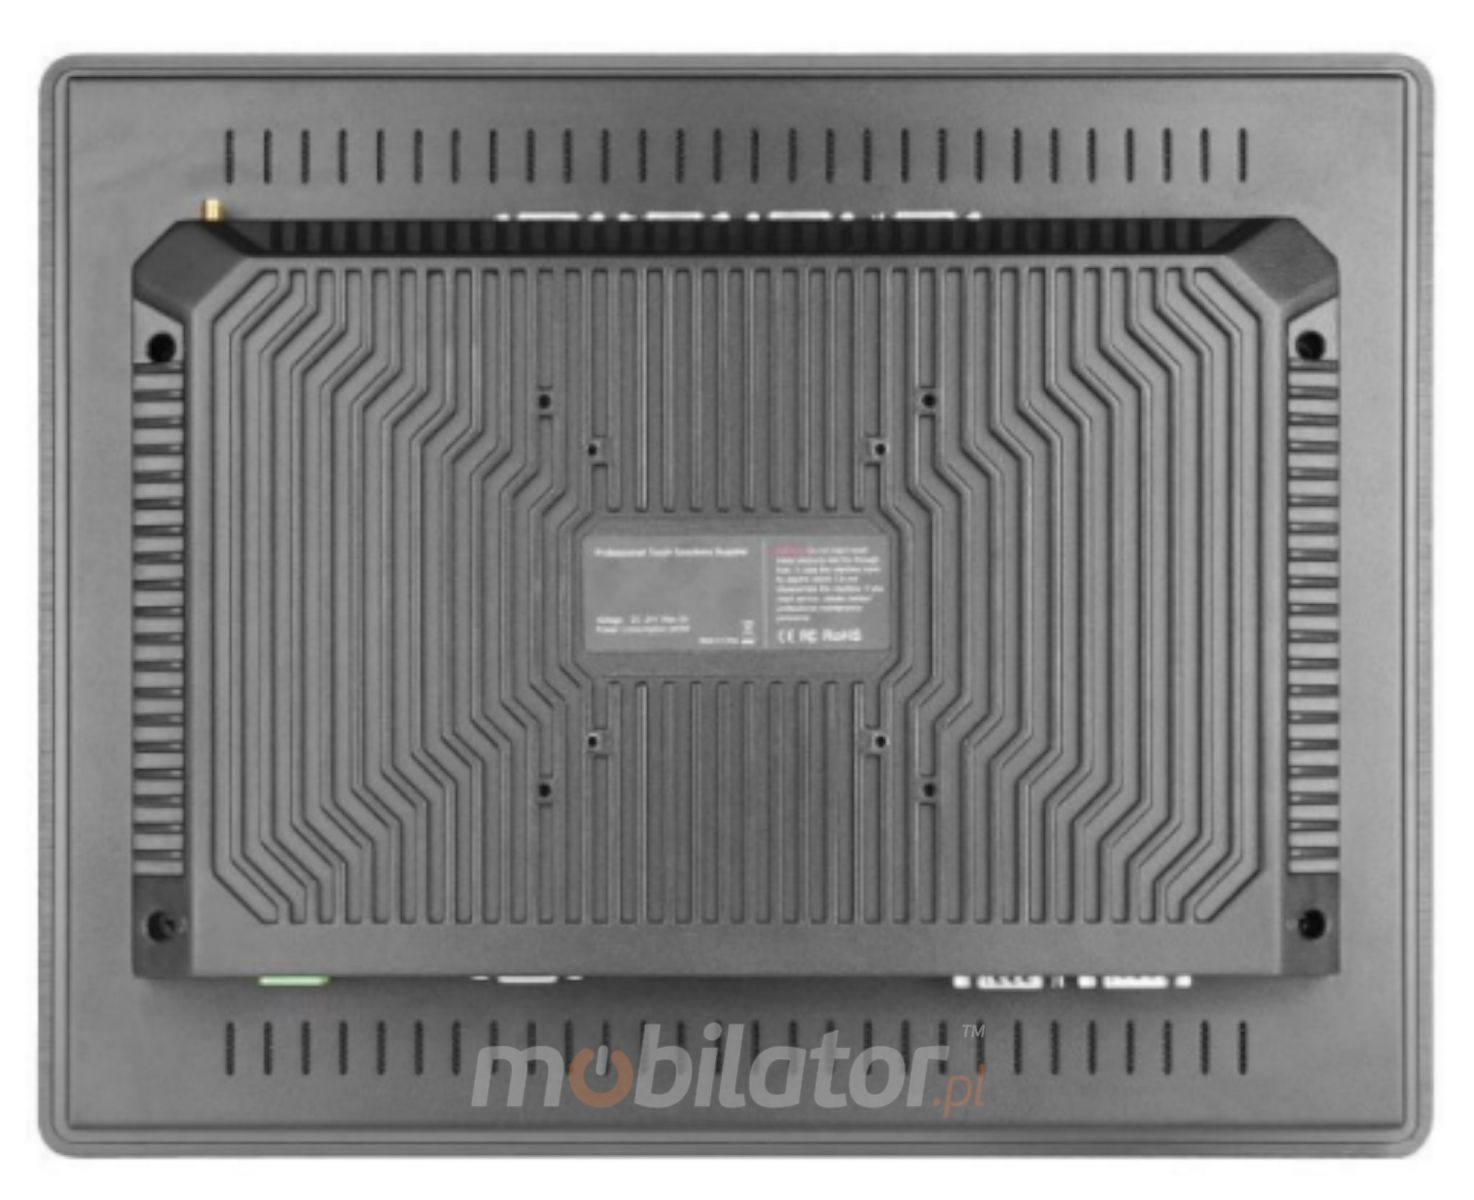  prosta i funkcjonalna obudowa w panelowym komputerze BIBOX-170PC2